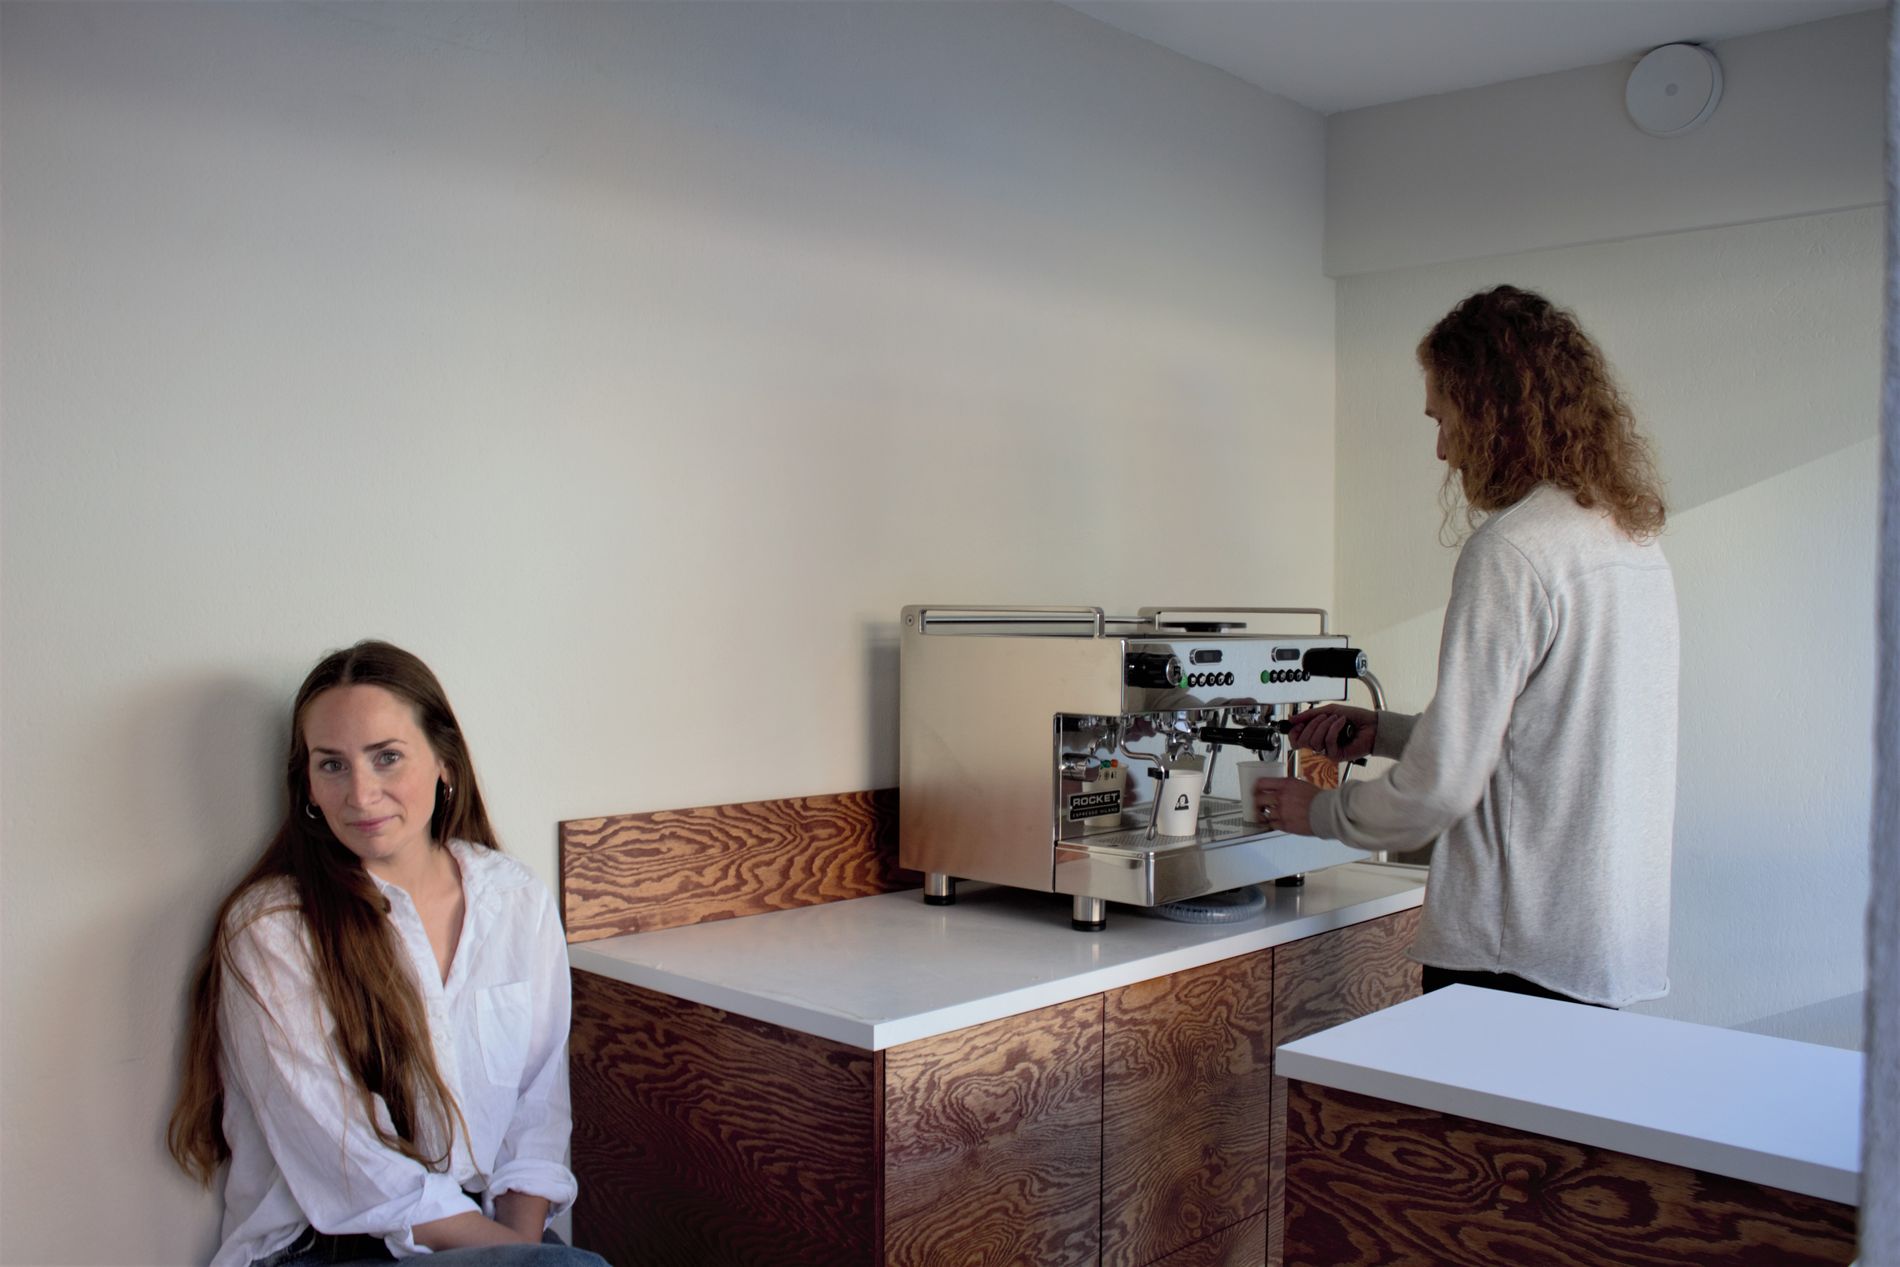 På benken til venstre kan kunder slå av en prat mens kaffen forberedes. 